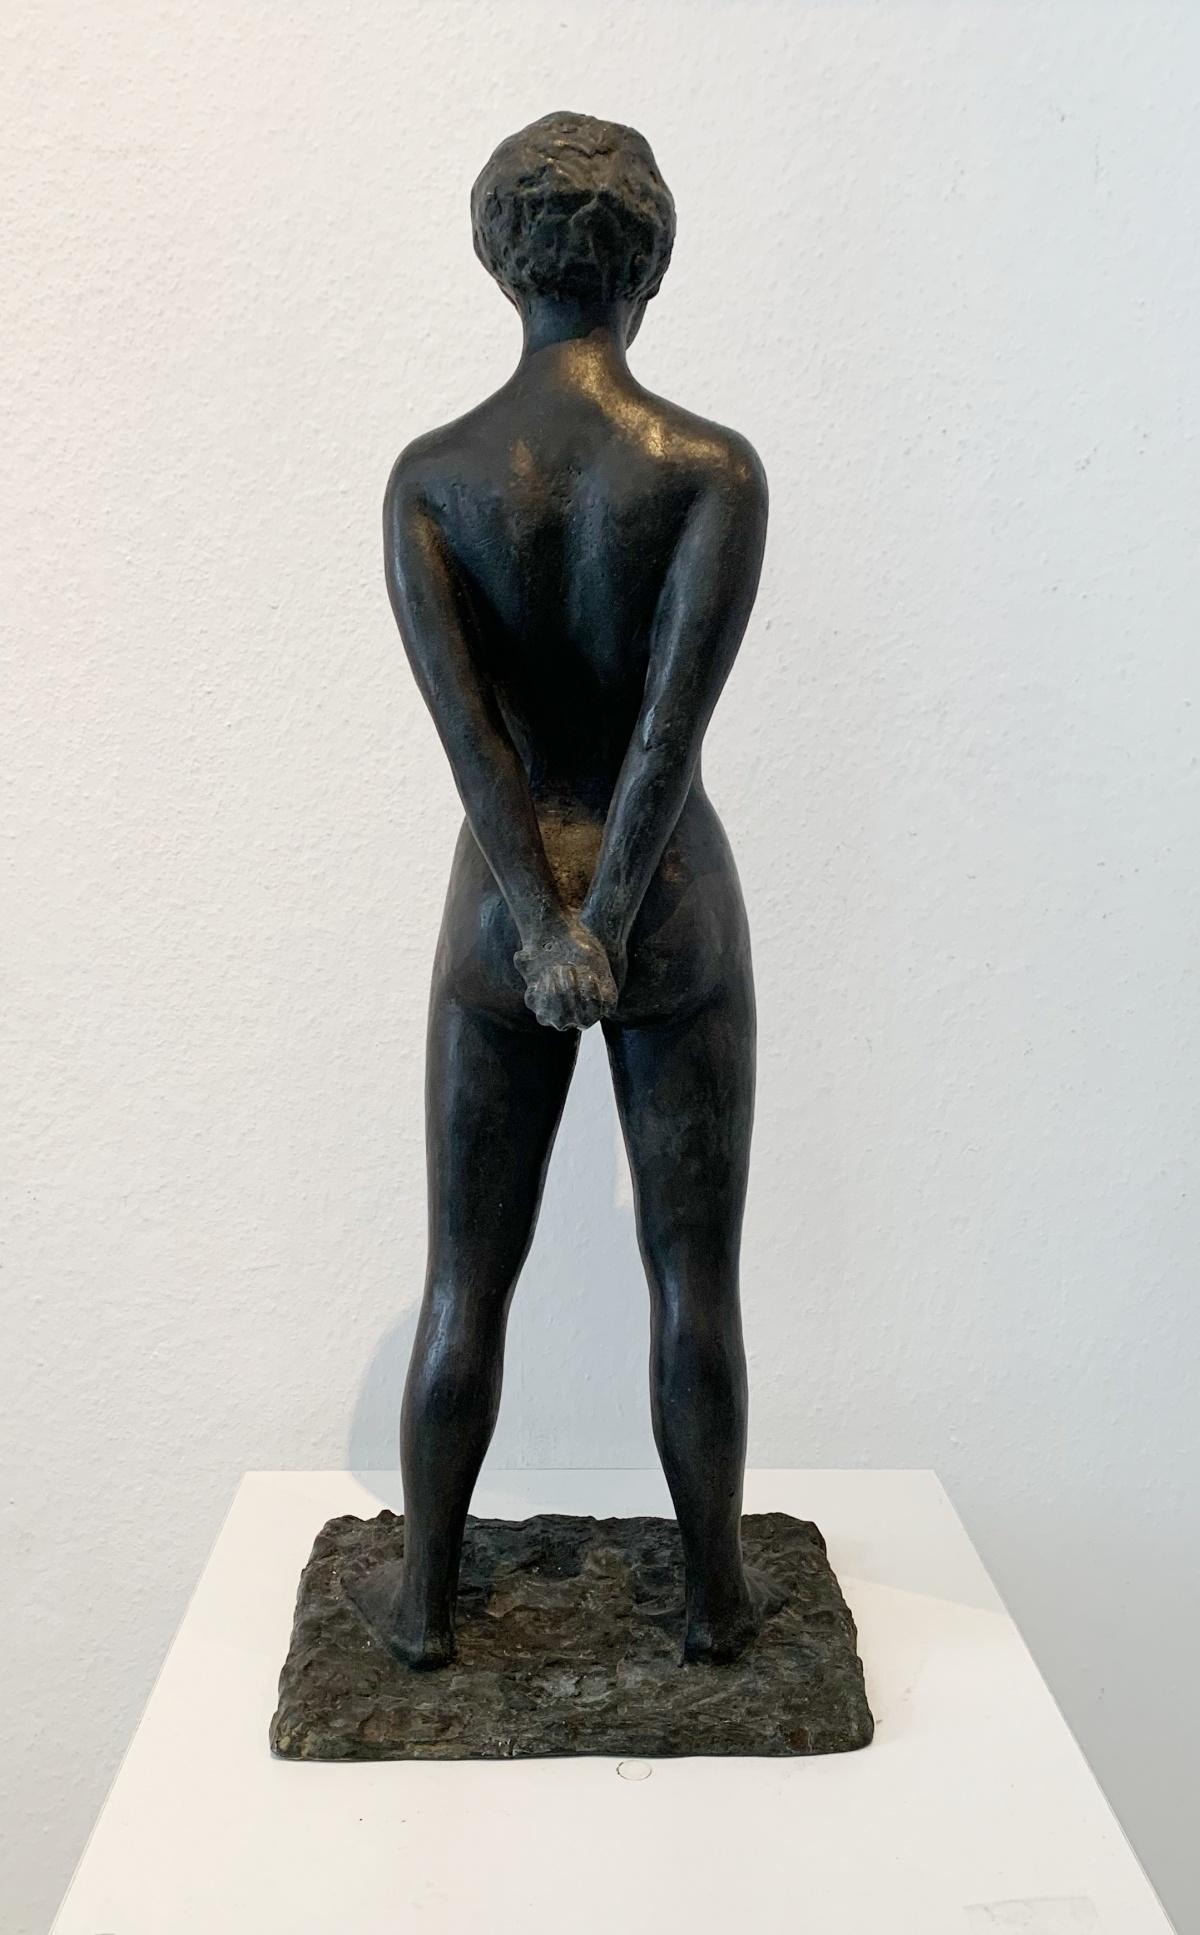 Frau – 21. Jahrhundert, zeitgenössische figurative Bronzeskulptur, weiblicher Akt (Gold), Nude Sculpture, von Ryszard Piotrowski